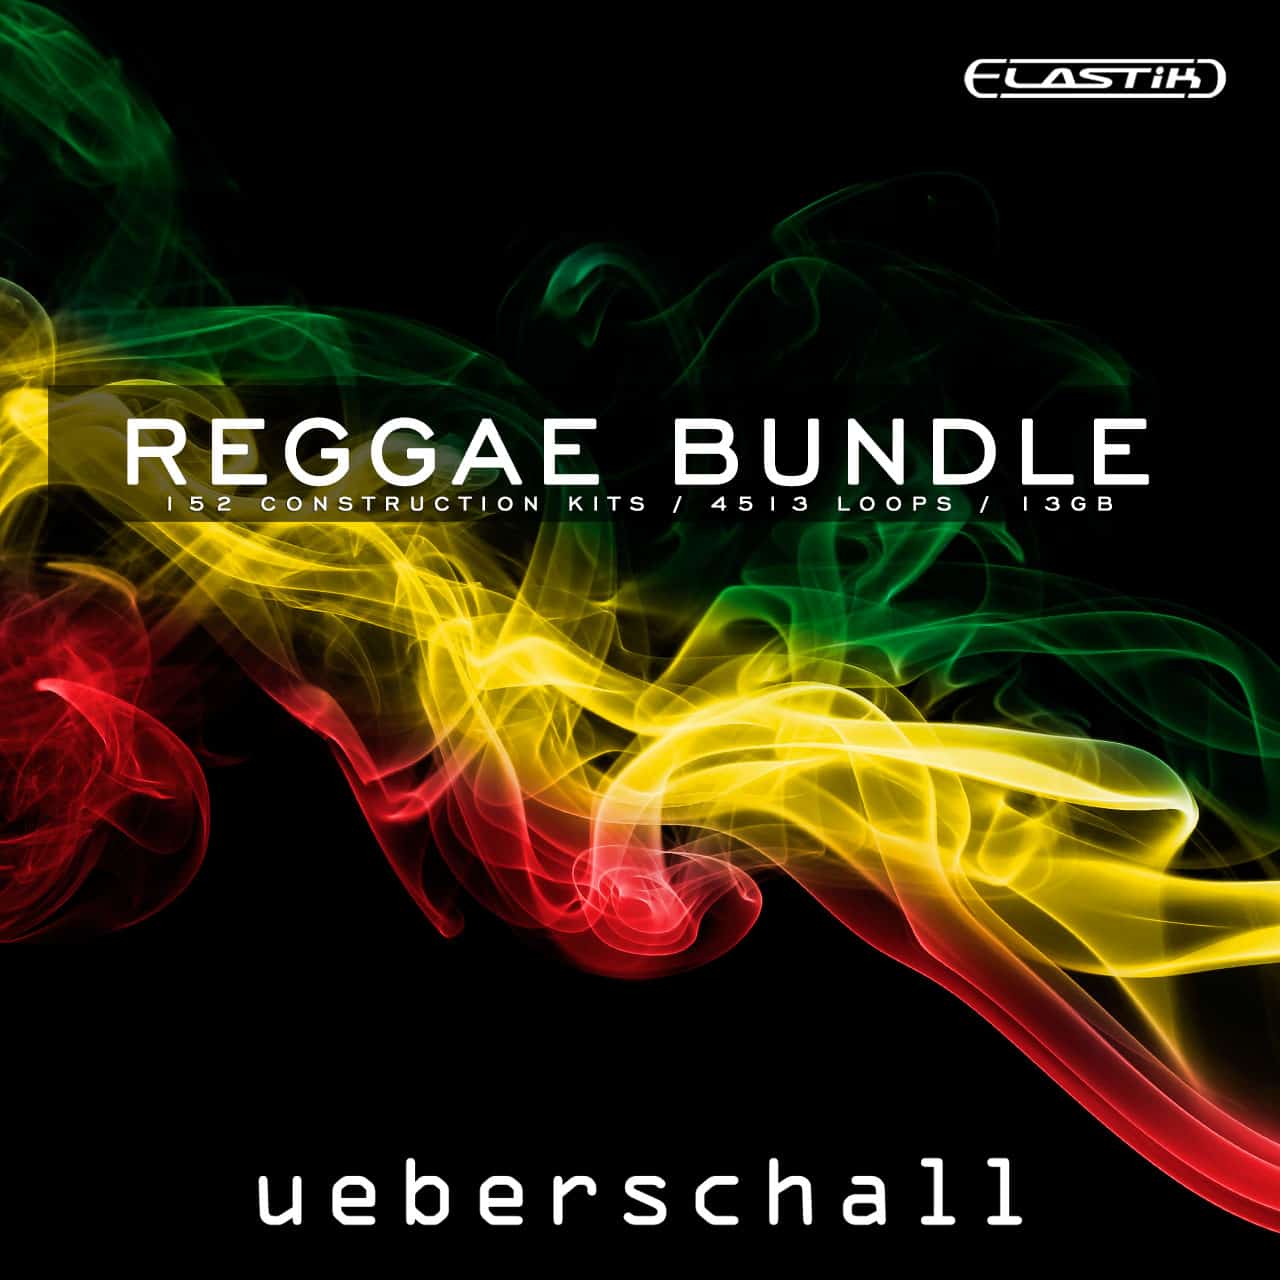 Reggae Bundle ueberschall 1280x1280 1